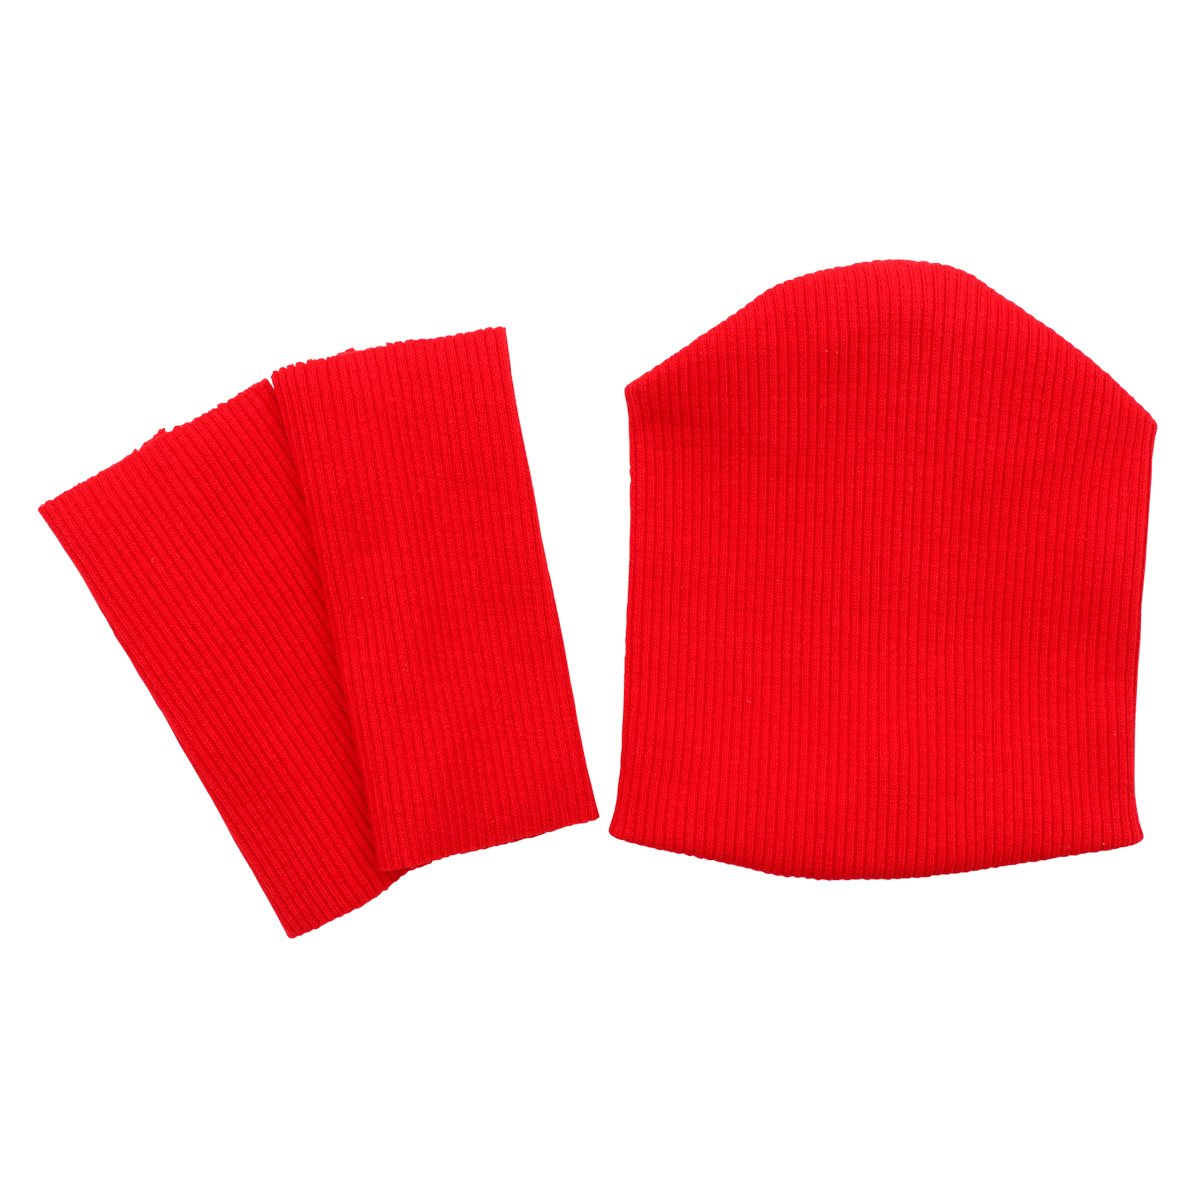 28875 Комплект одежды для игрушек красный: шапка (9,5*10 см), гетры (3*8 см)